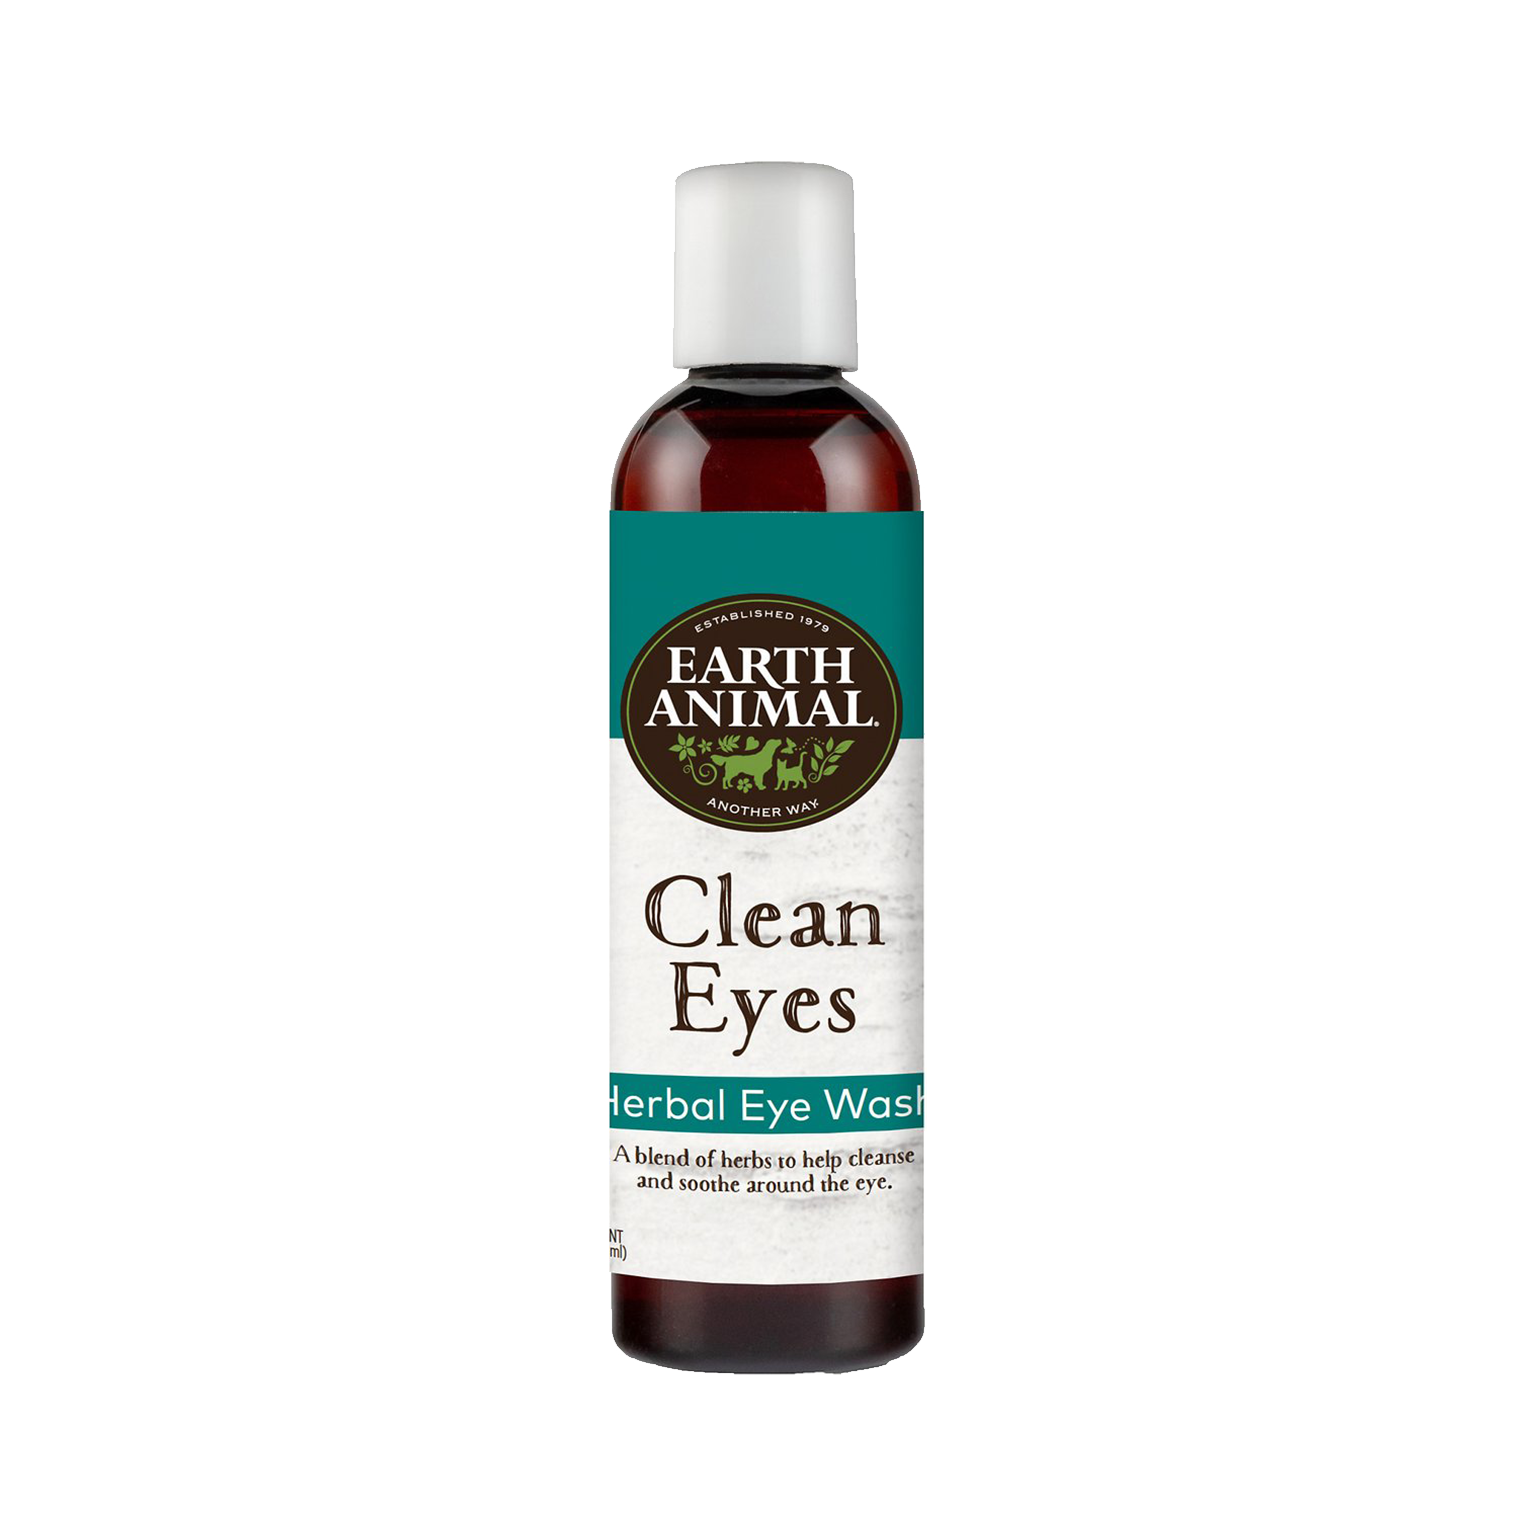 Clean Eyes Herbal Eye Wash